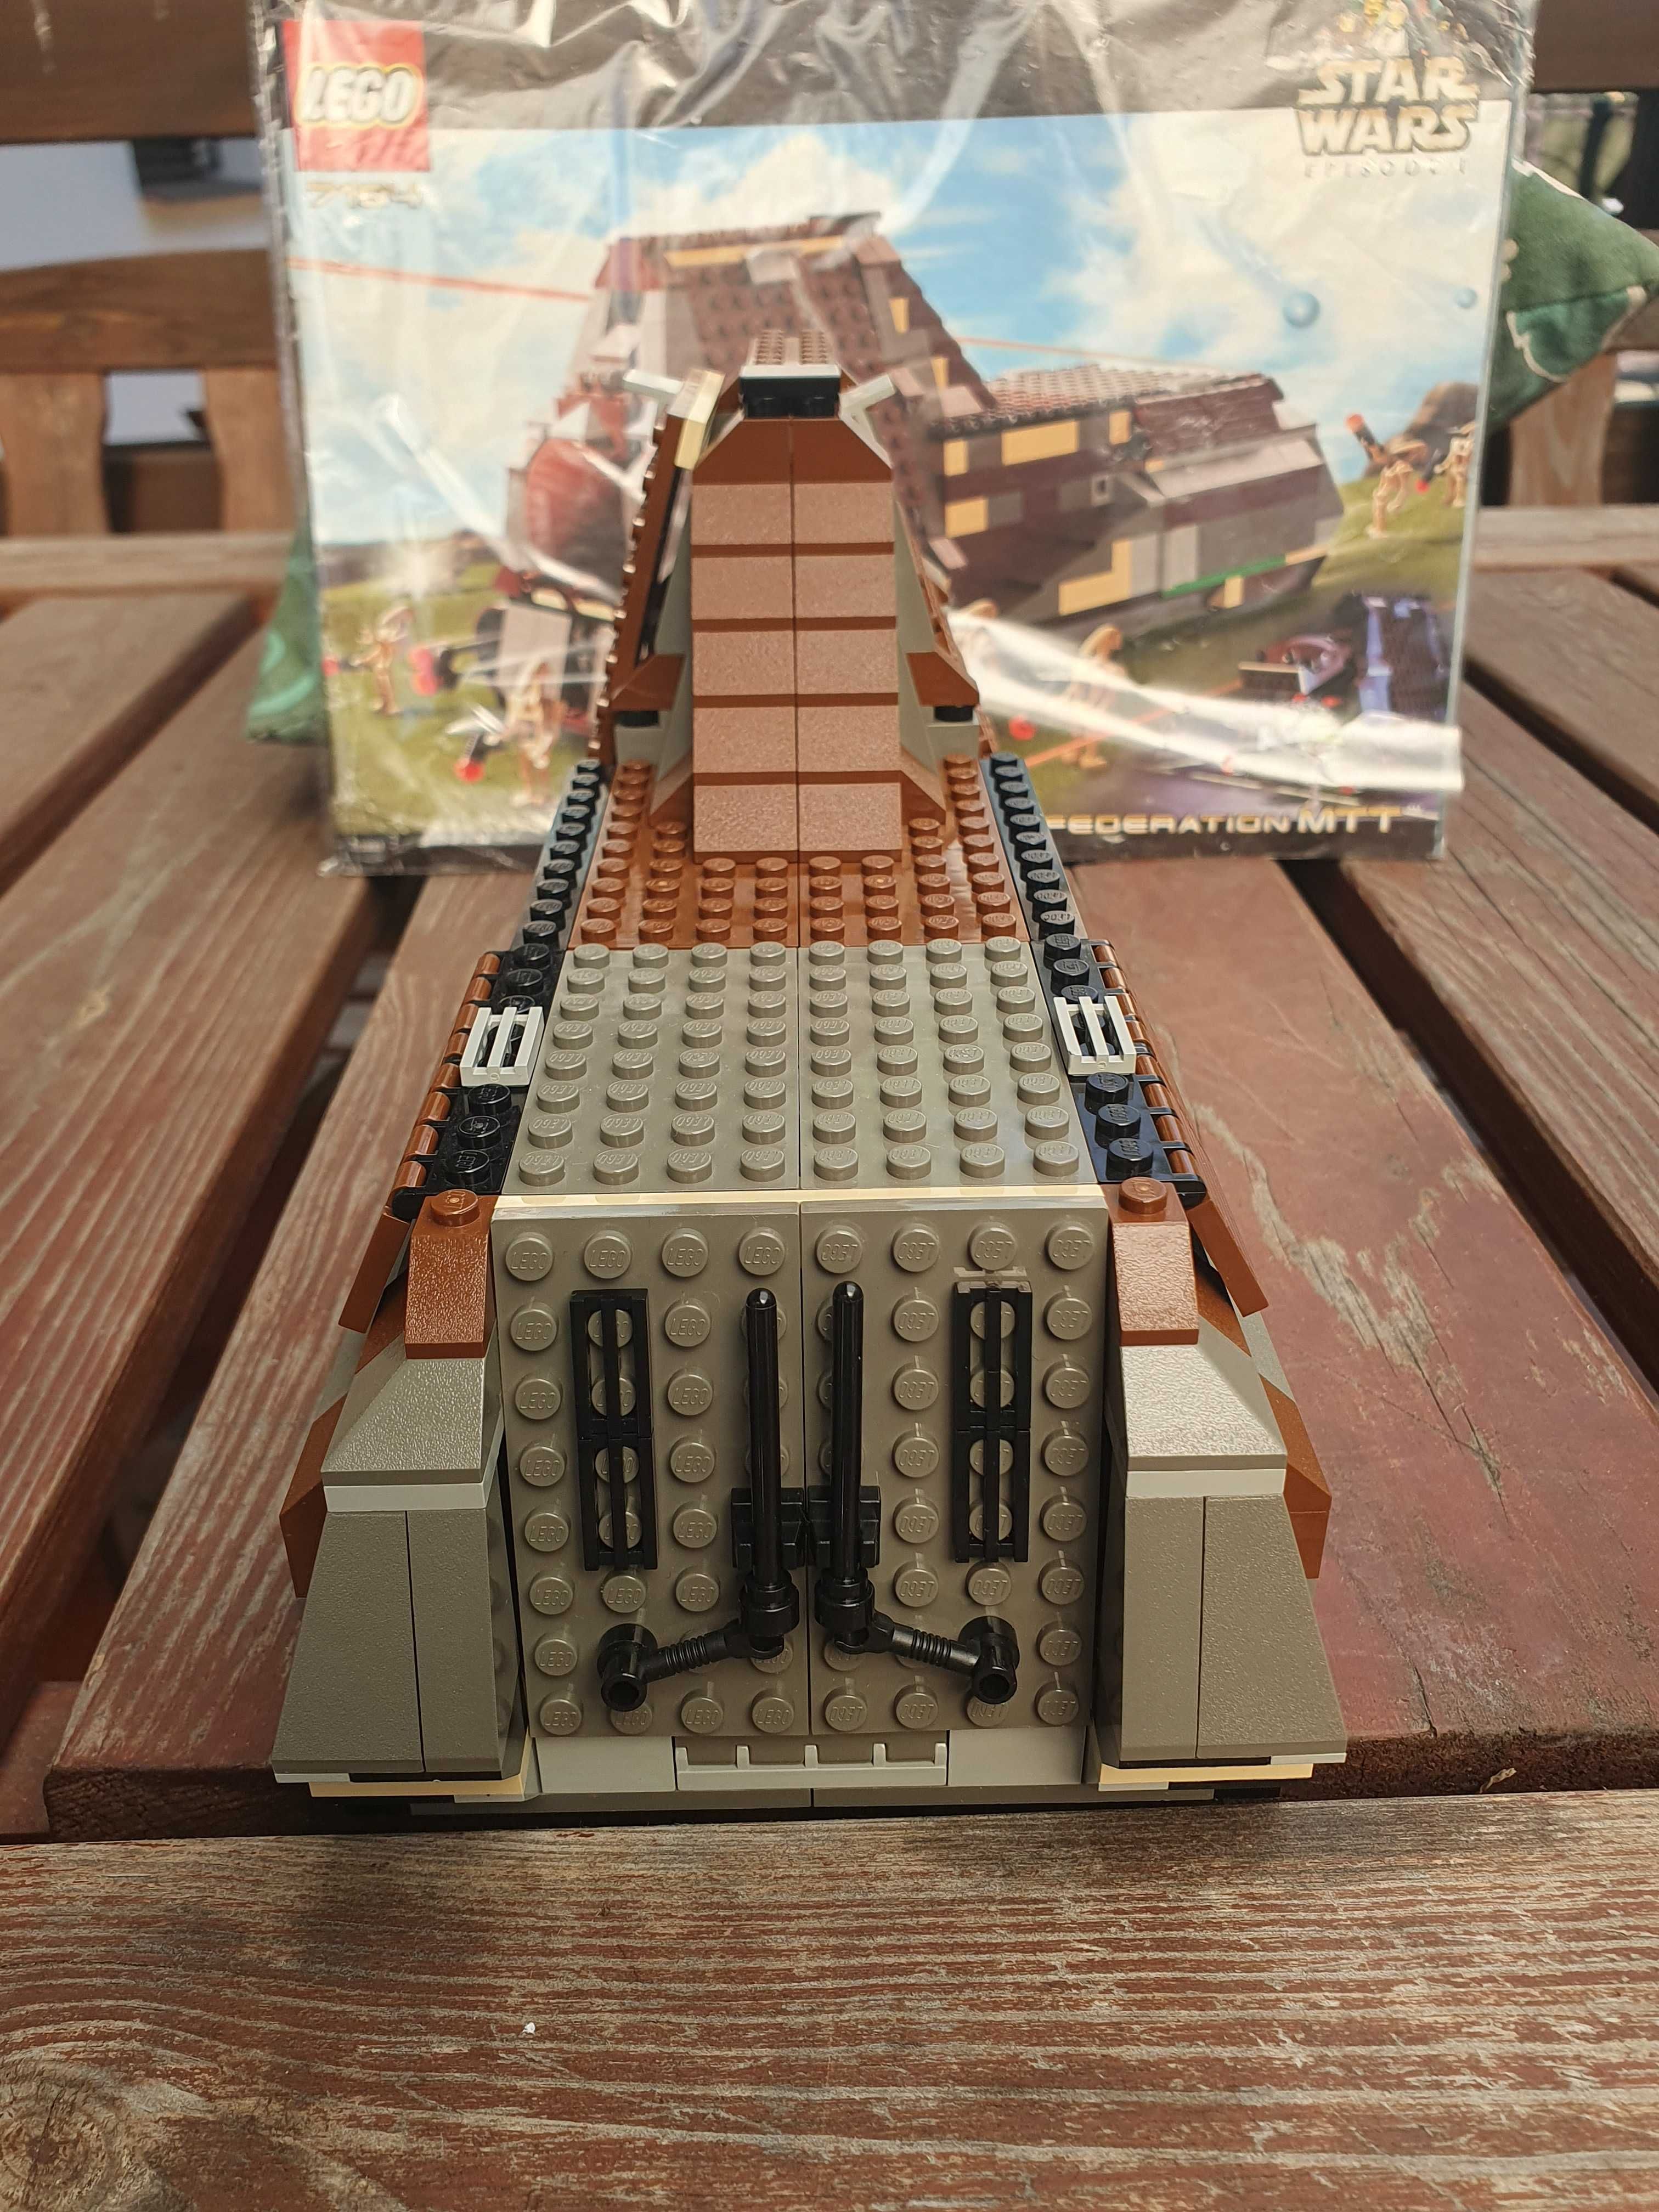 Lego 7184 Star Wars